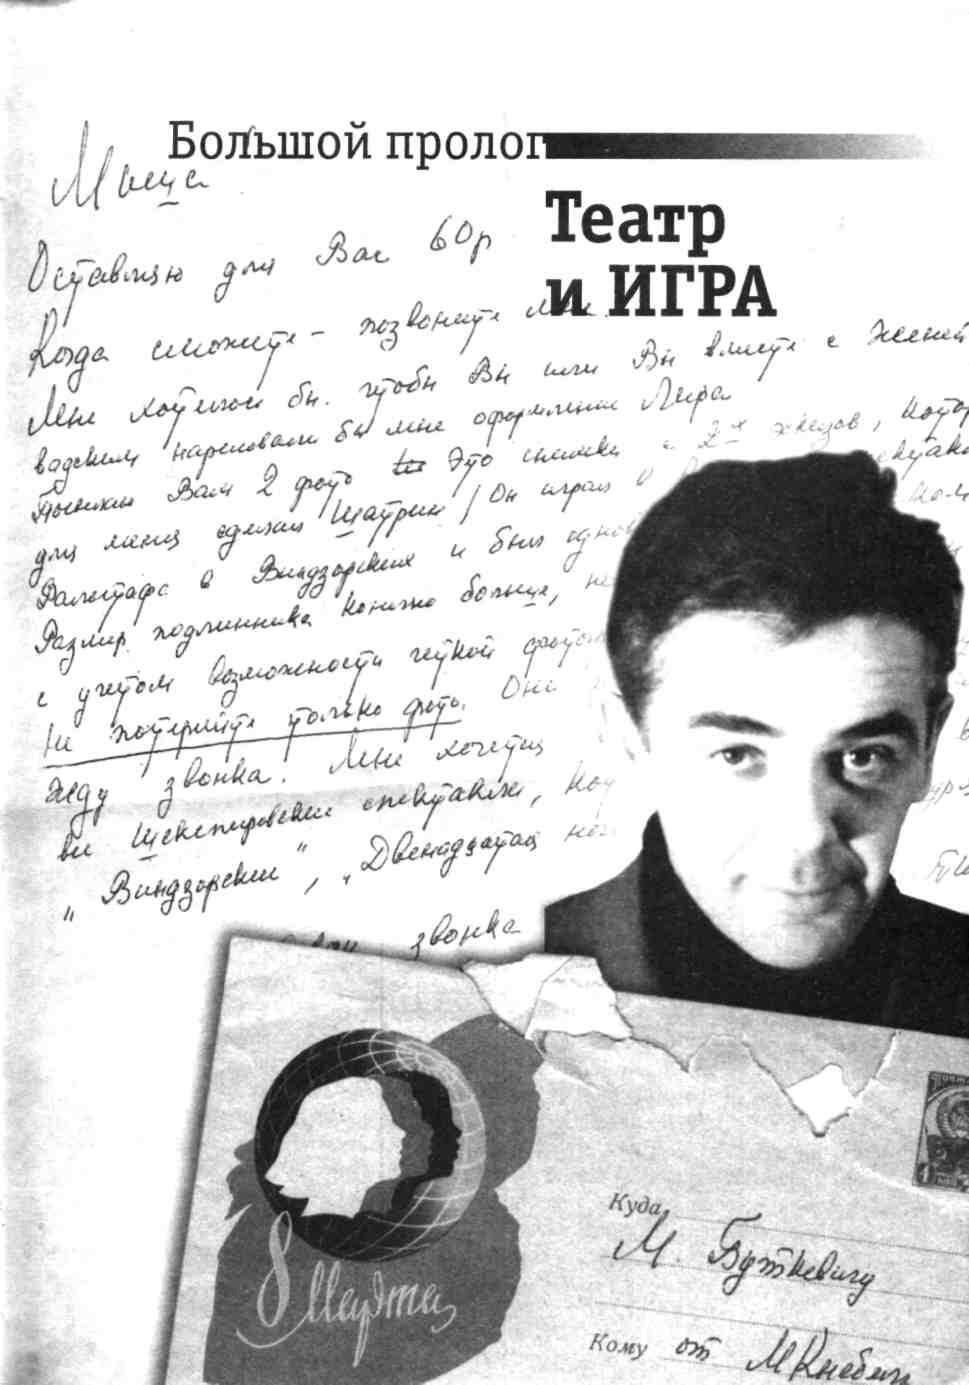 8 июля 1987 года Окрошка из Пушкина в роли эпиграфа Твердо уверенный - фото 1